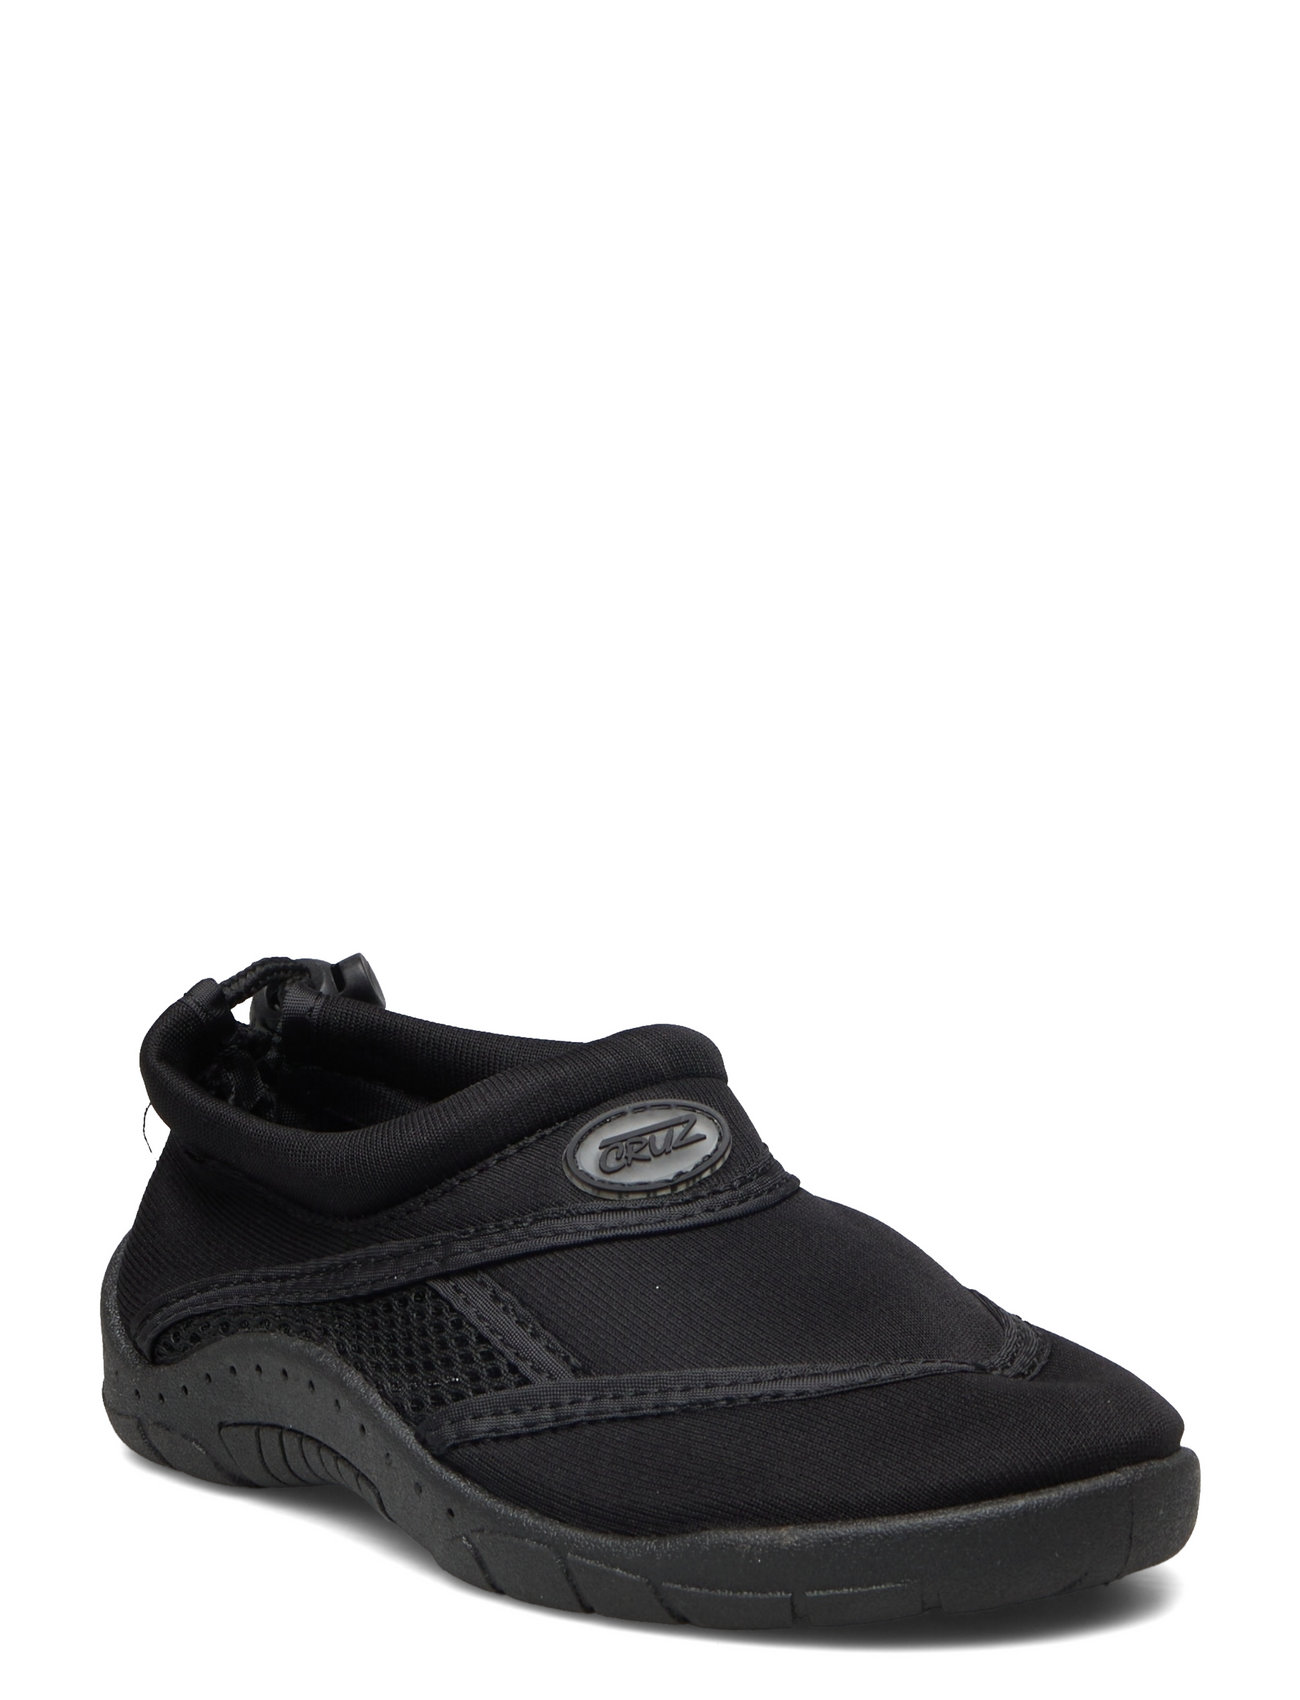 Greensburg Water Shoe Sport Summer Shoes Sandals Pool Sliders Black Cruz